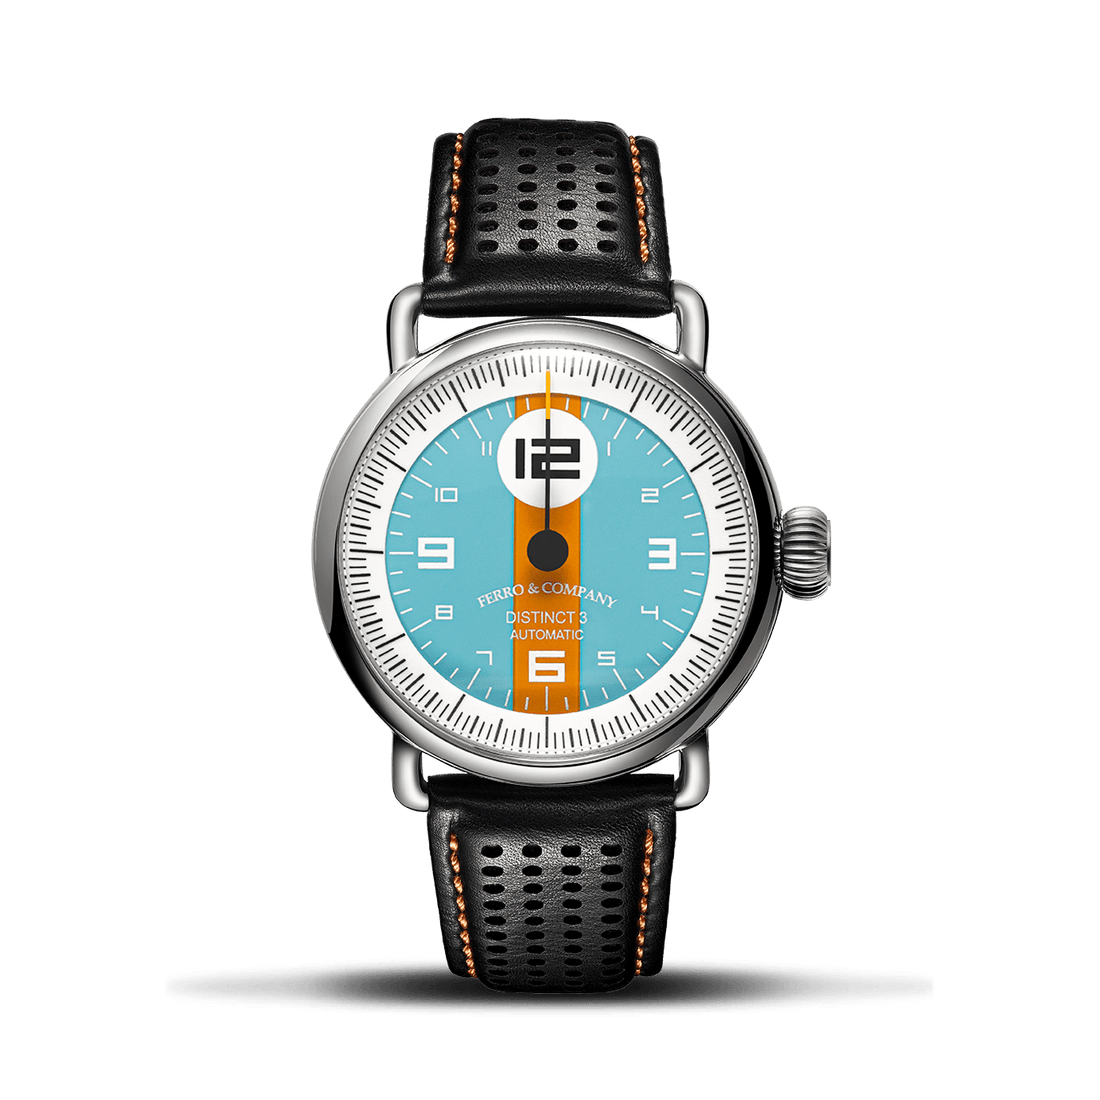 Distinct 3 GLF - Ferro & Company Watches